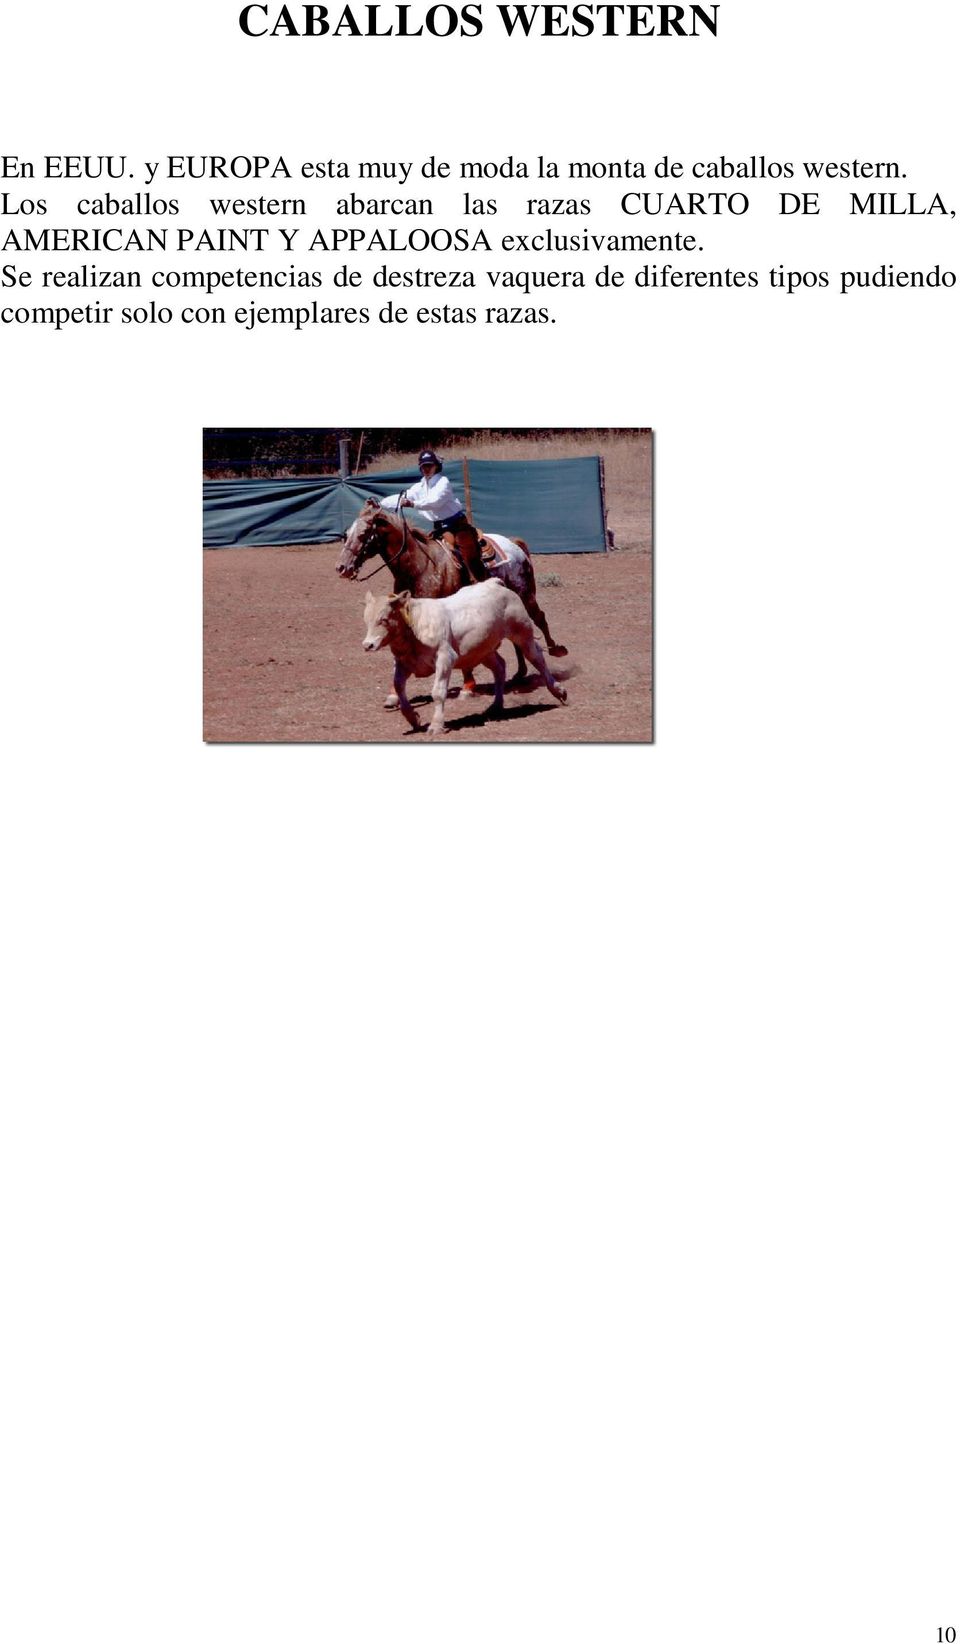 Los caballos western abarcan las razas CUARTO DE MILLA, AMERICAN PAINT Y